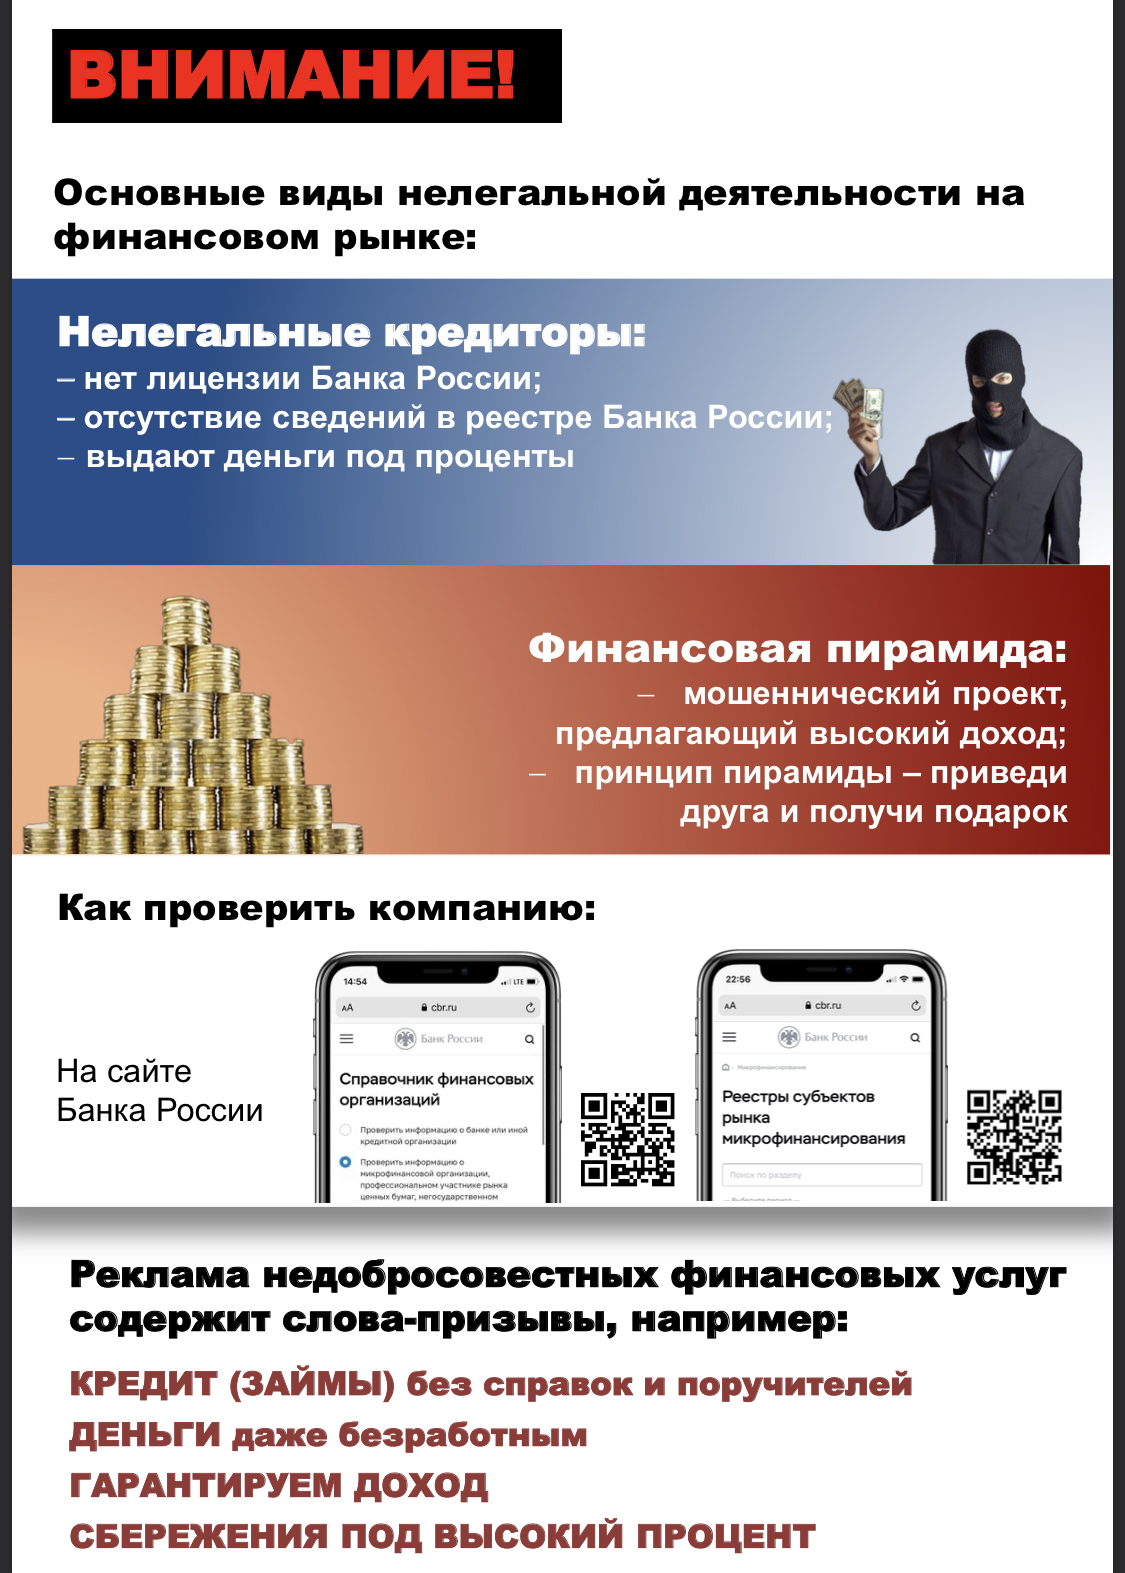 Управление Центрального банка Российской Федерации информирует